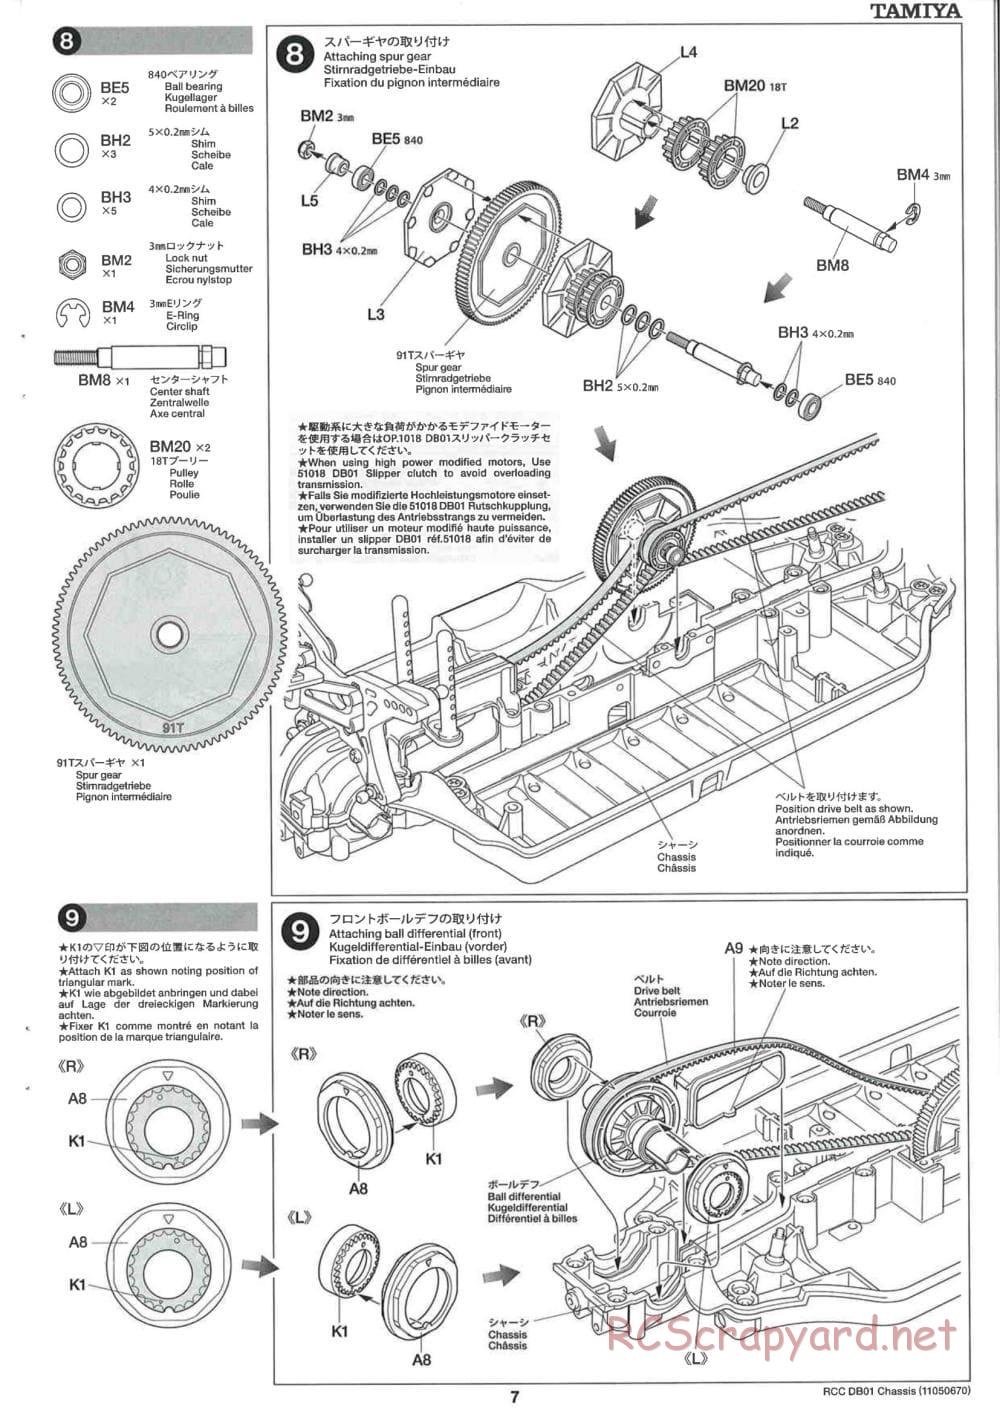 Tamiya - DB-01 Chassis - Manual - Page 7